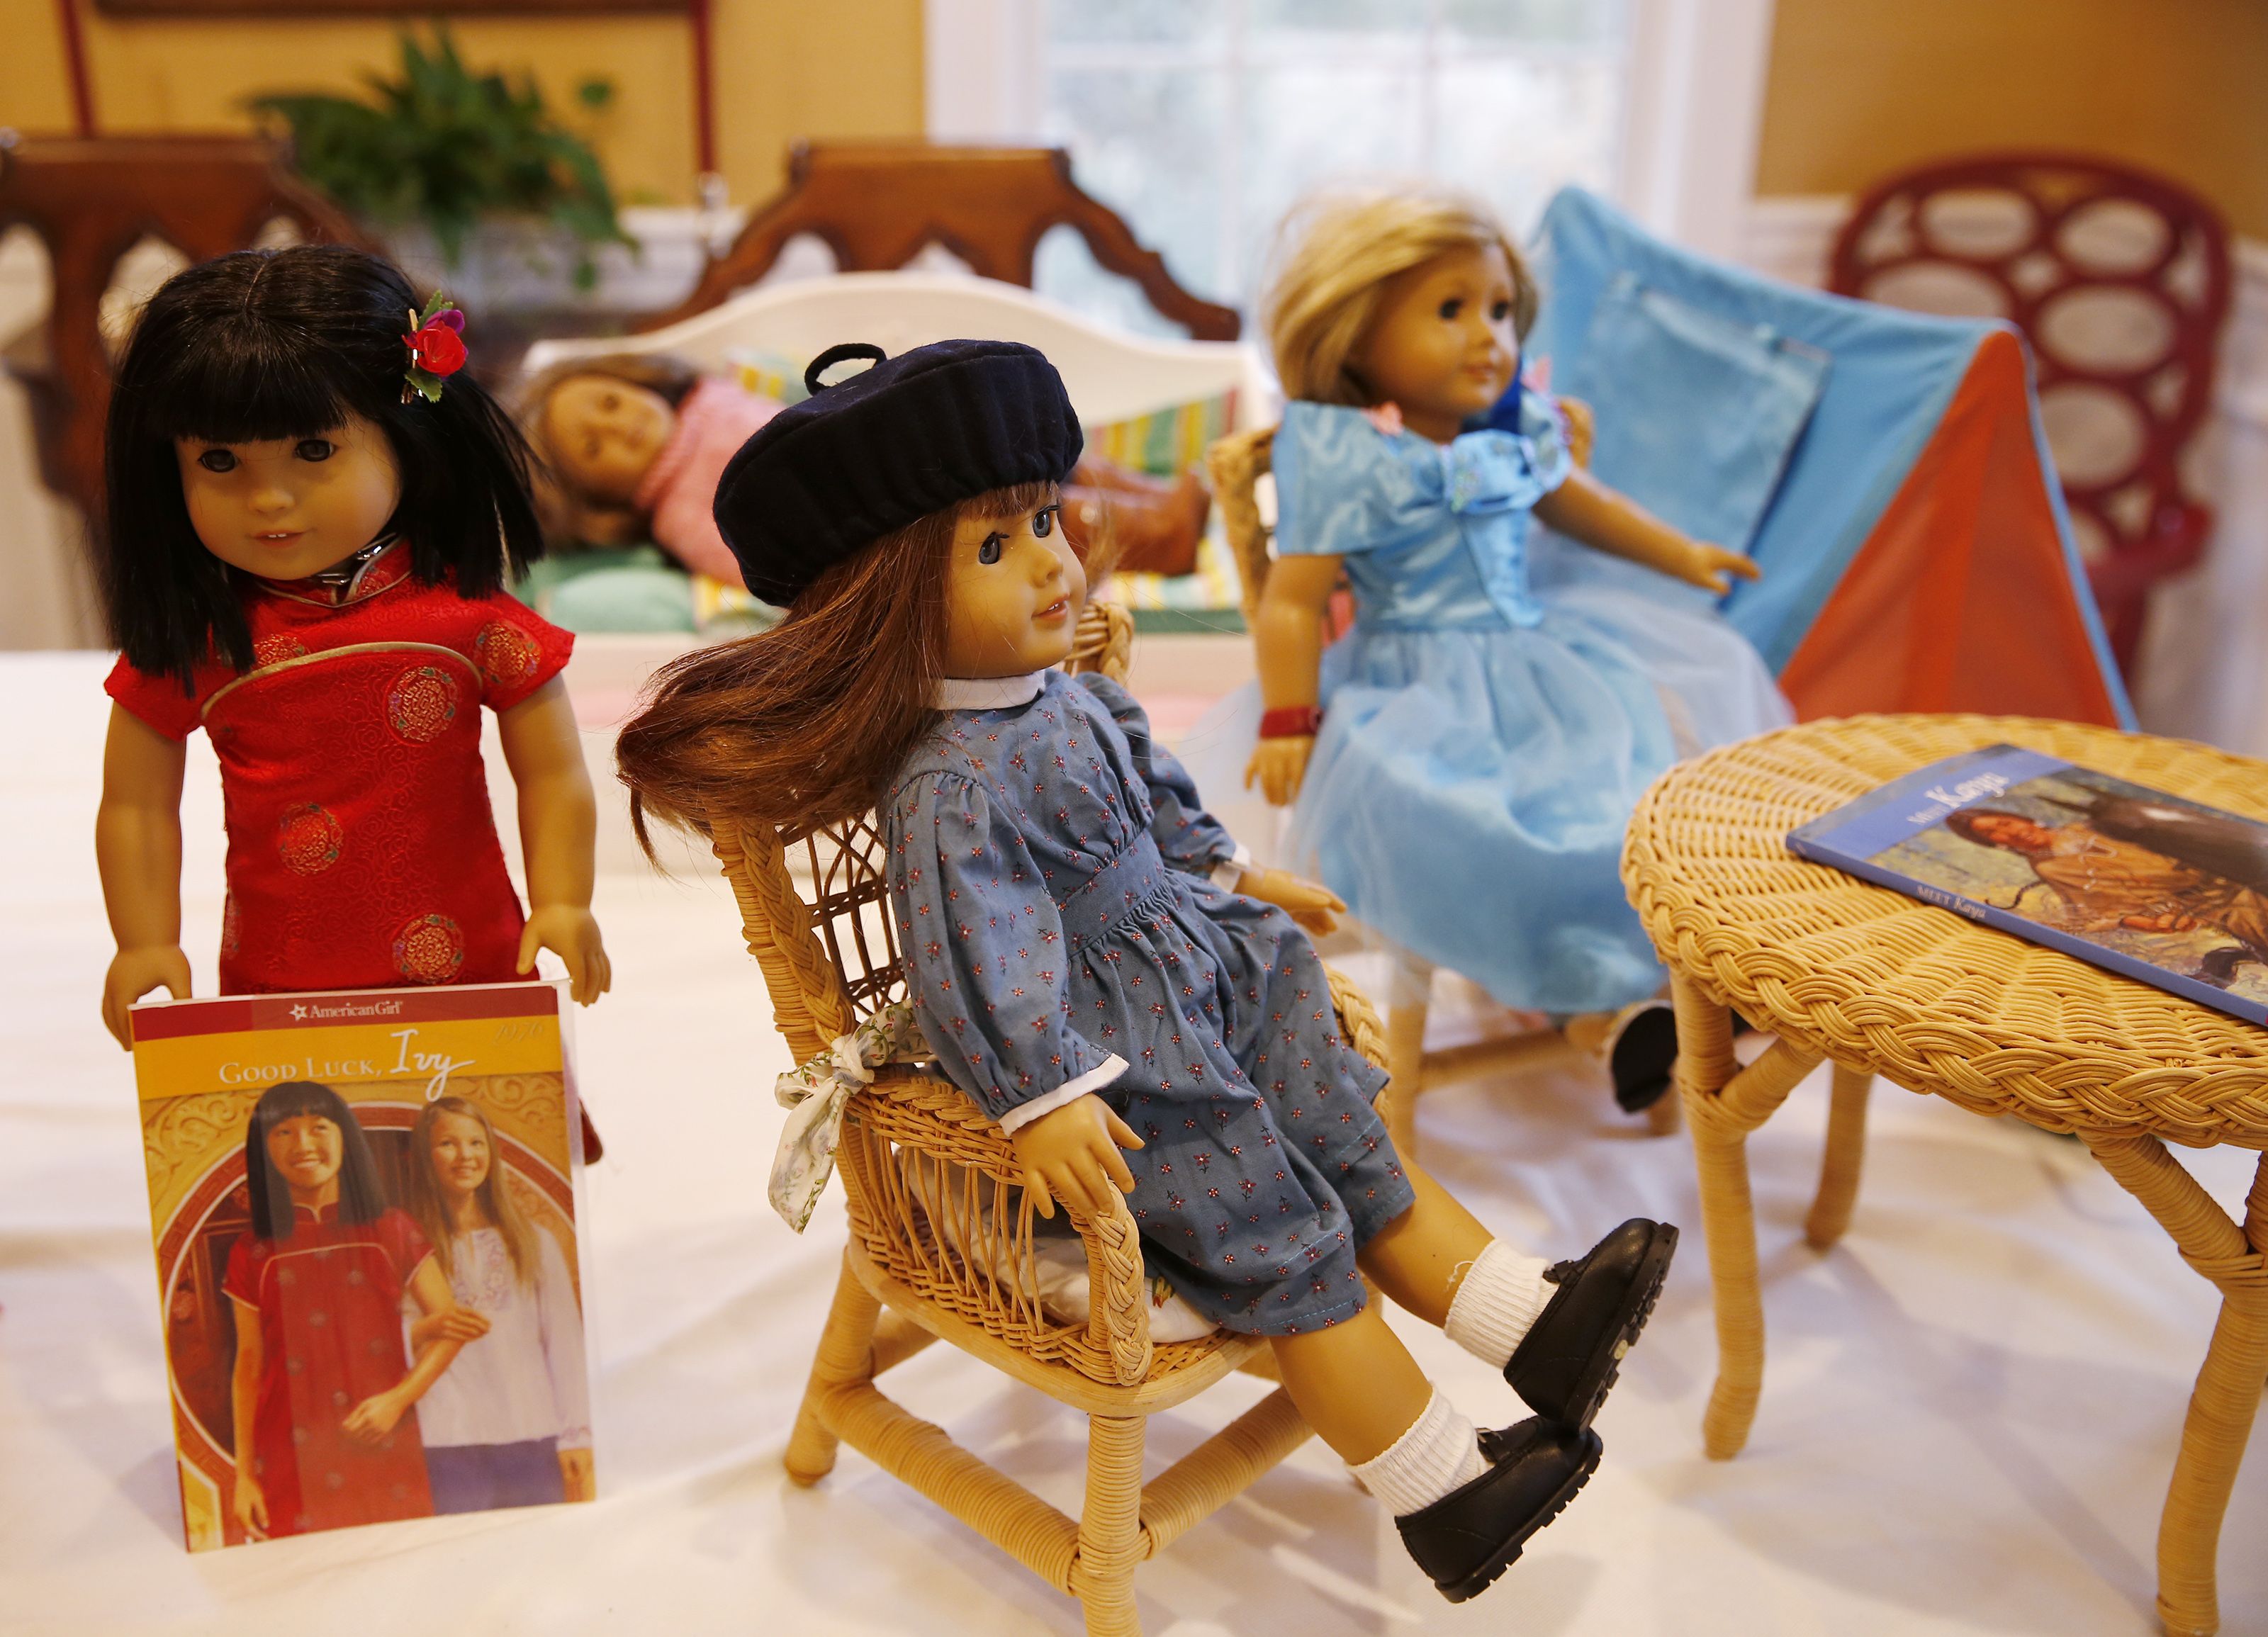 30 cosas que probablemente no sabías sobre las muñecas American Girl